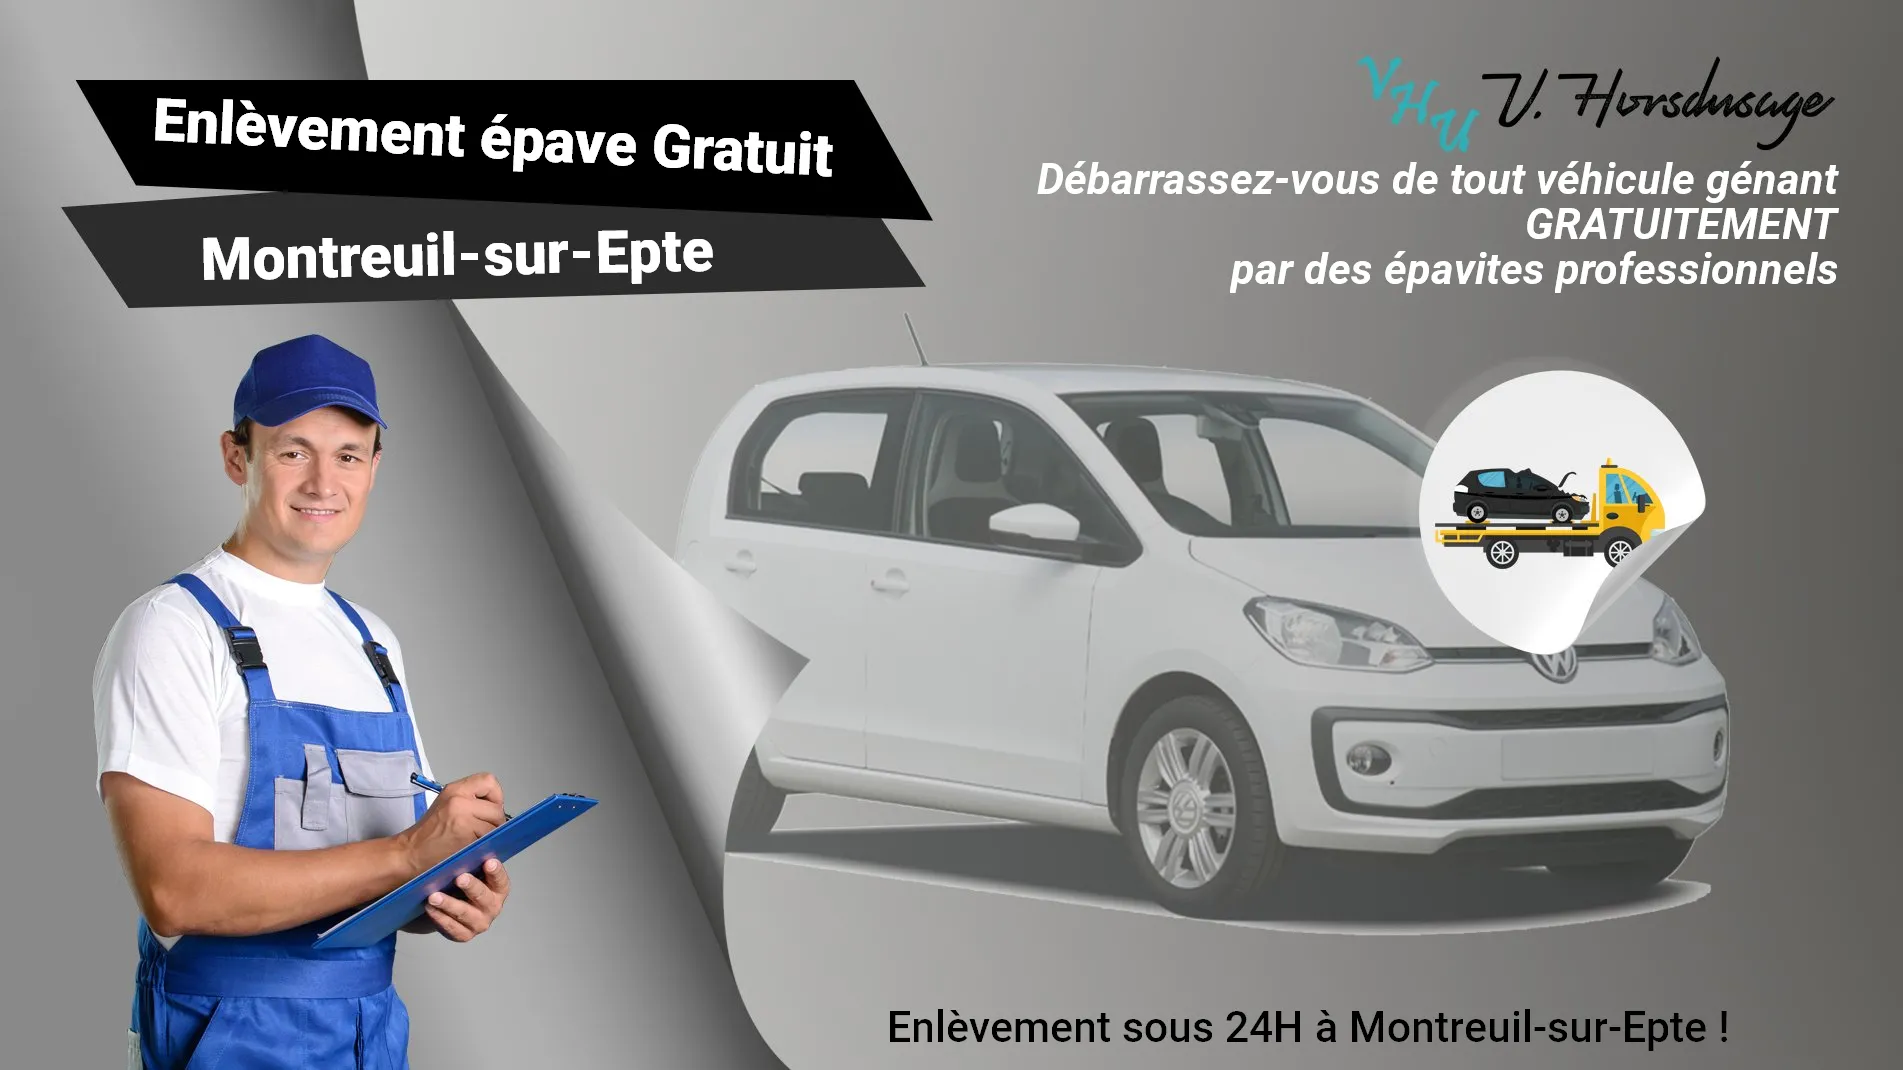 Pour un enlèvement gratuit à Montreuil-sur-Epte, contactez nos épavistes agréé VHU